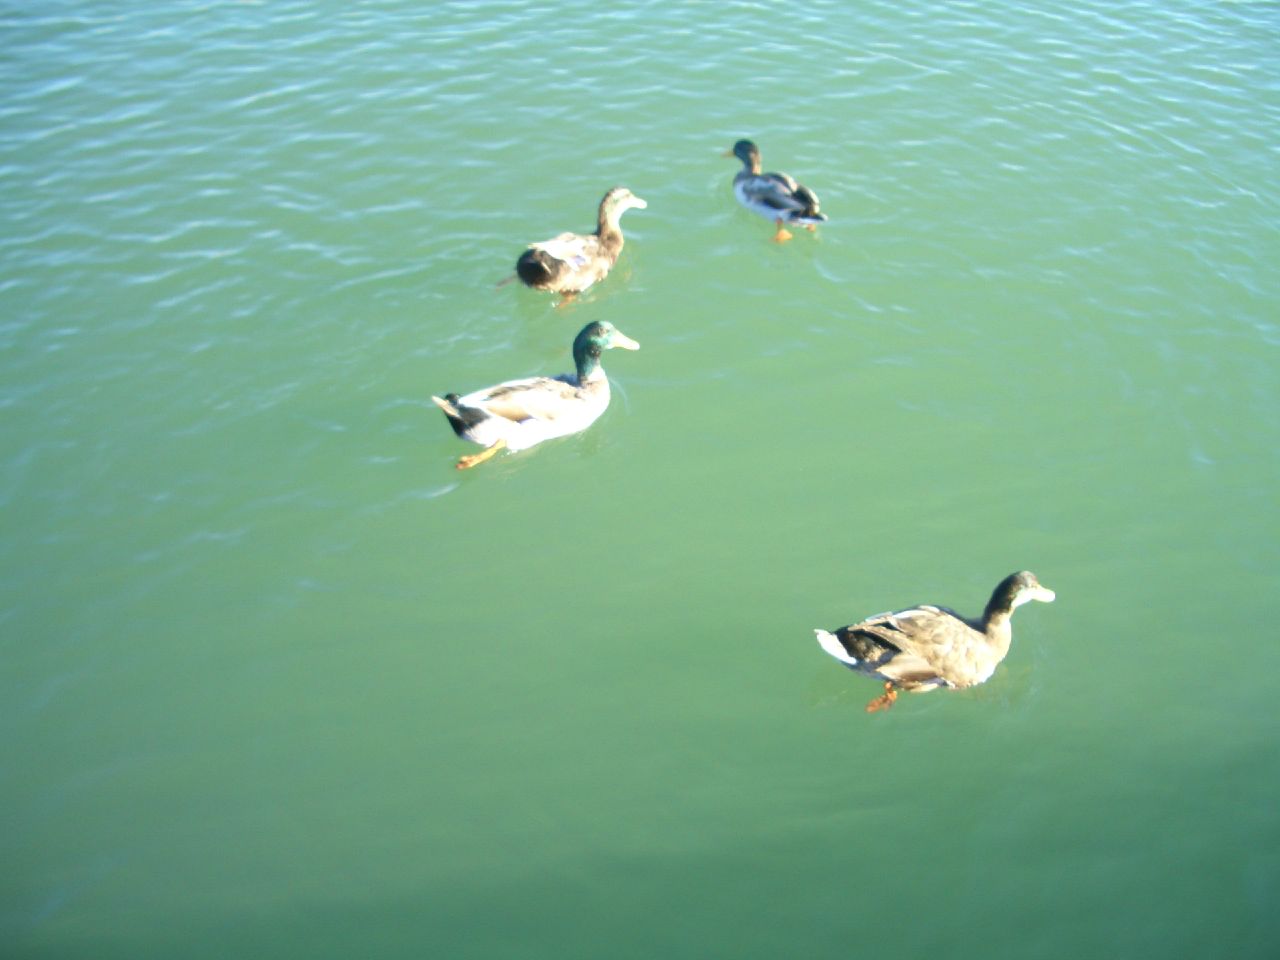 a few ducks swimming in a body of water